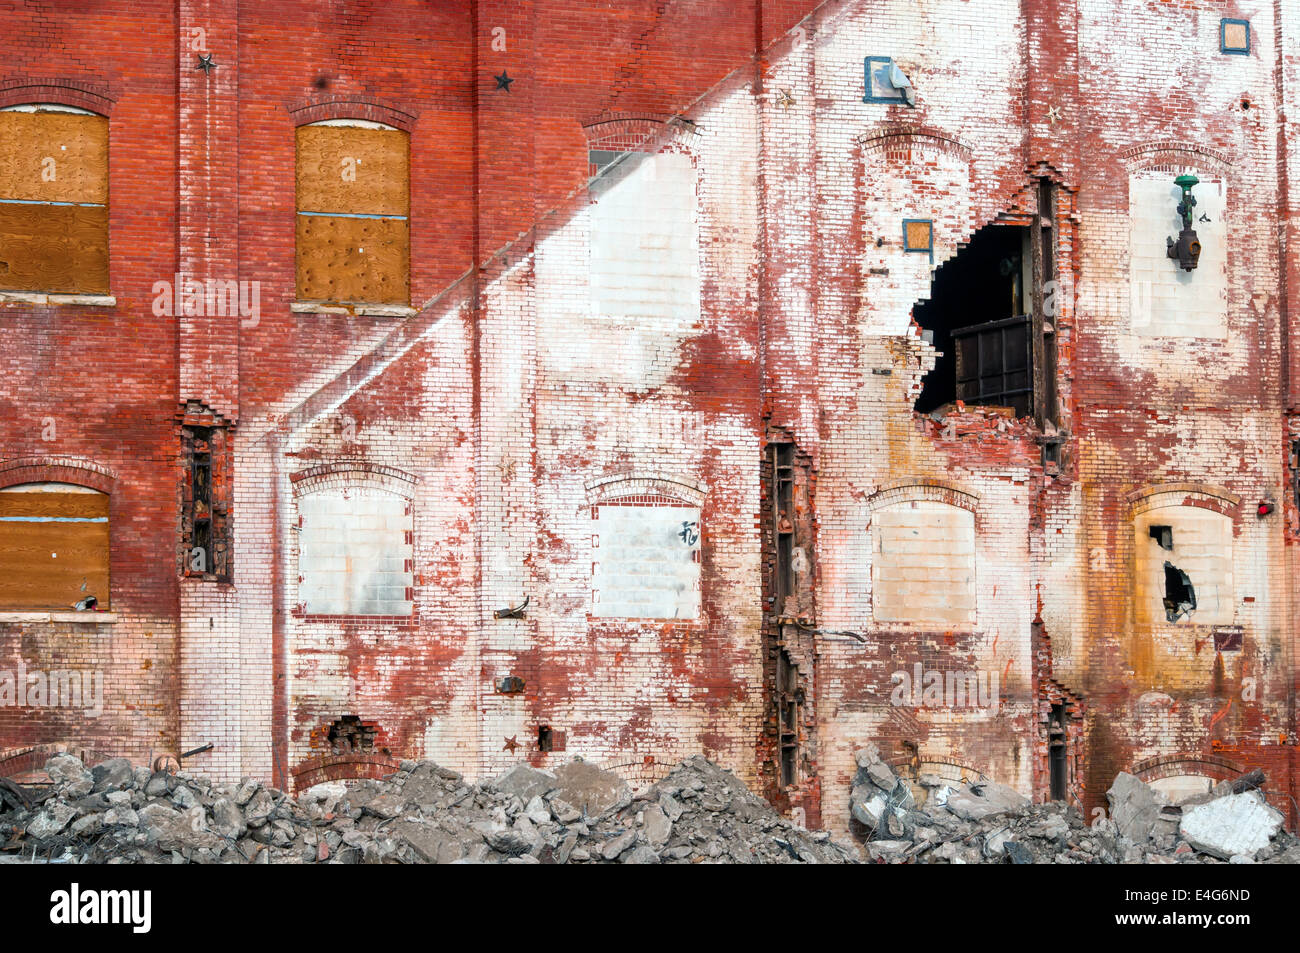 Beginn, eine alte Zuckerfabrik in einer ländlichen Gemeinde im nördlich-zentralen Colorado, USA zu zerstören. Stockfoto